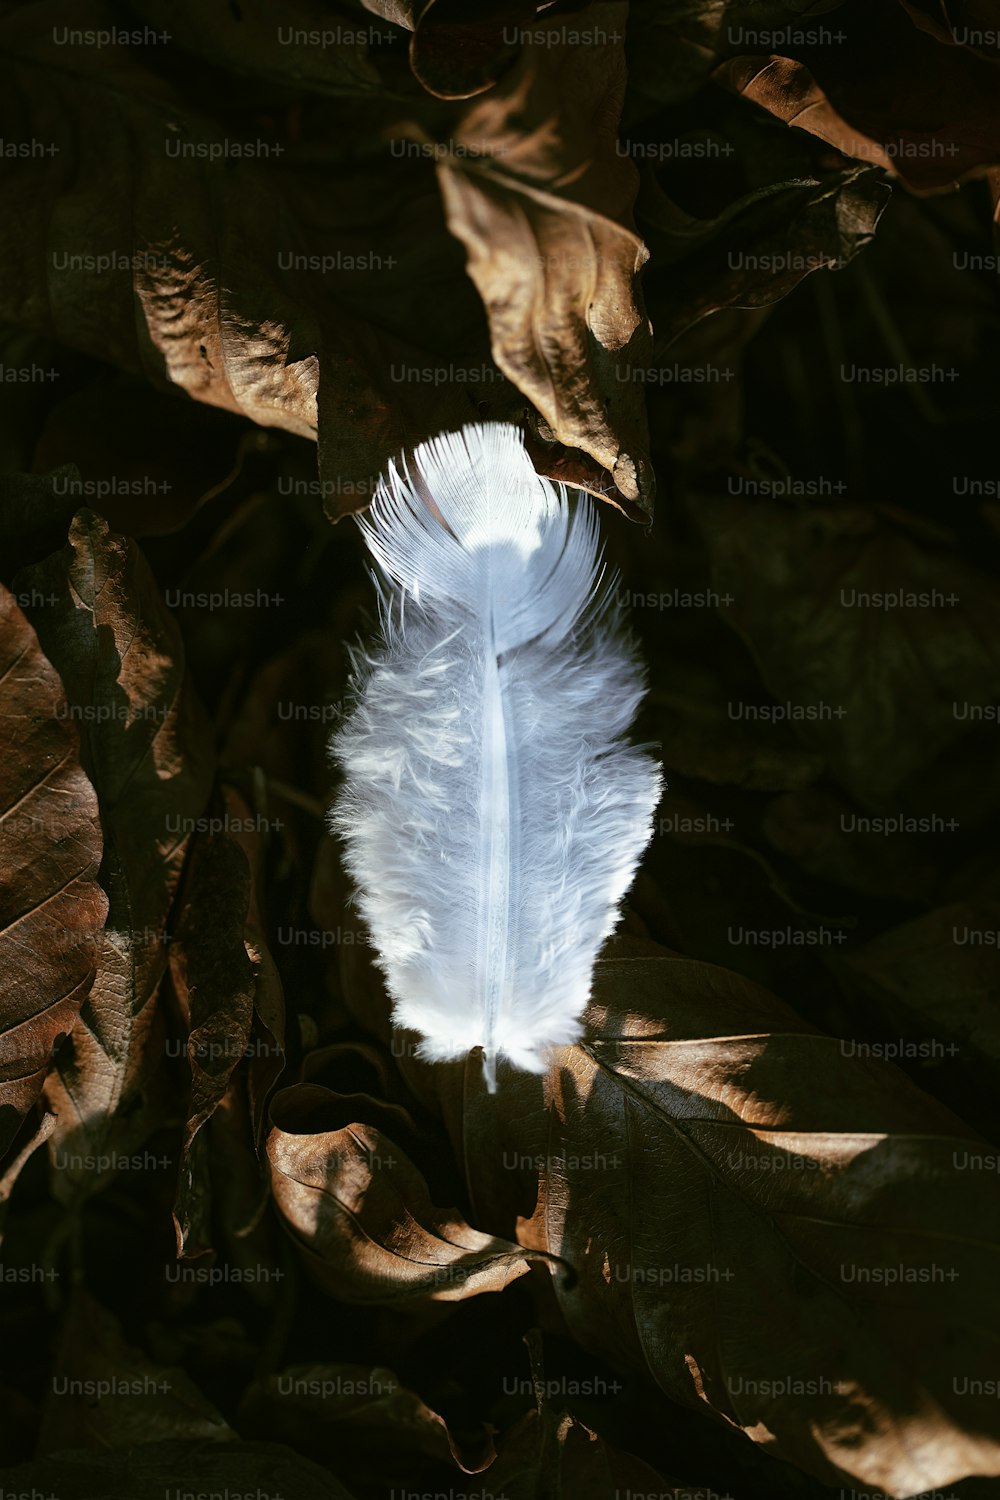 나뭇잎으로 덮인 땅 위에 앉아 있는 하얀 깃털